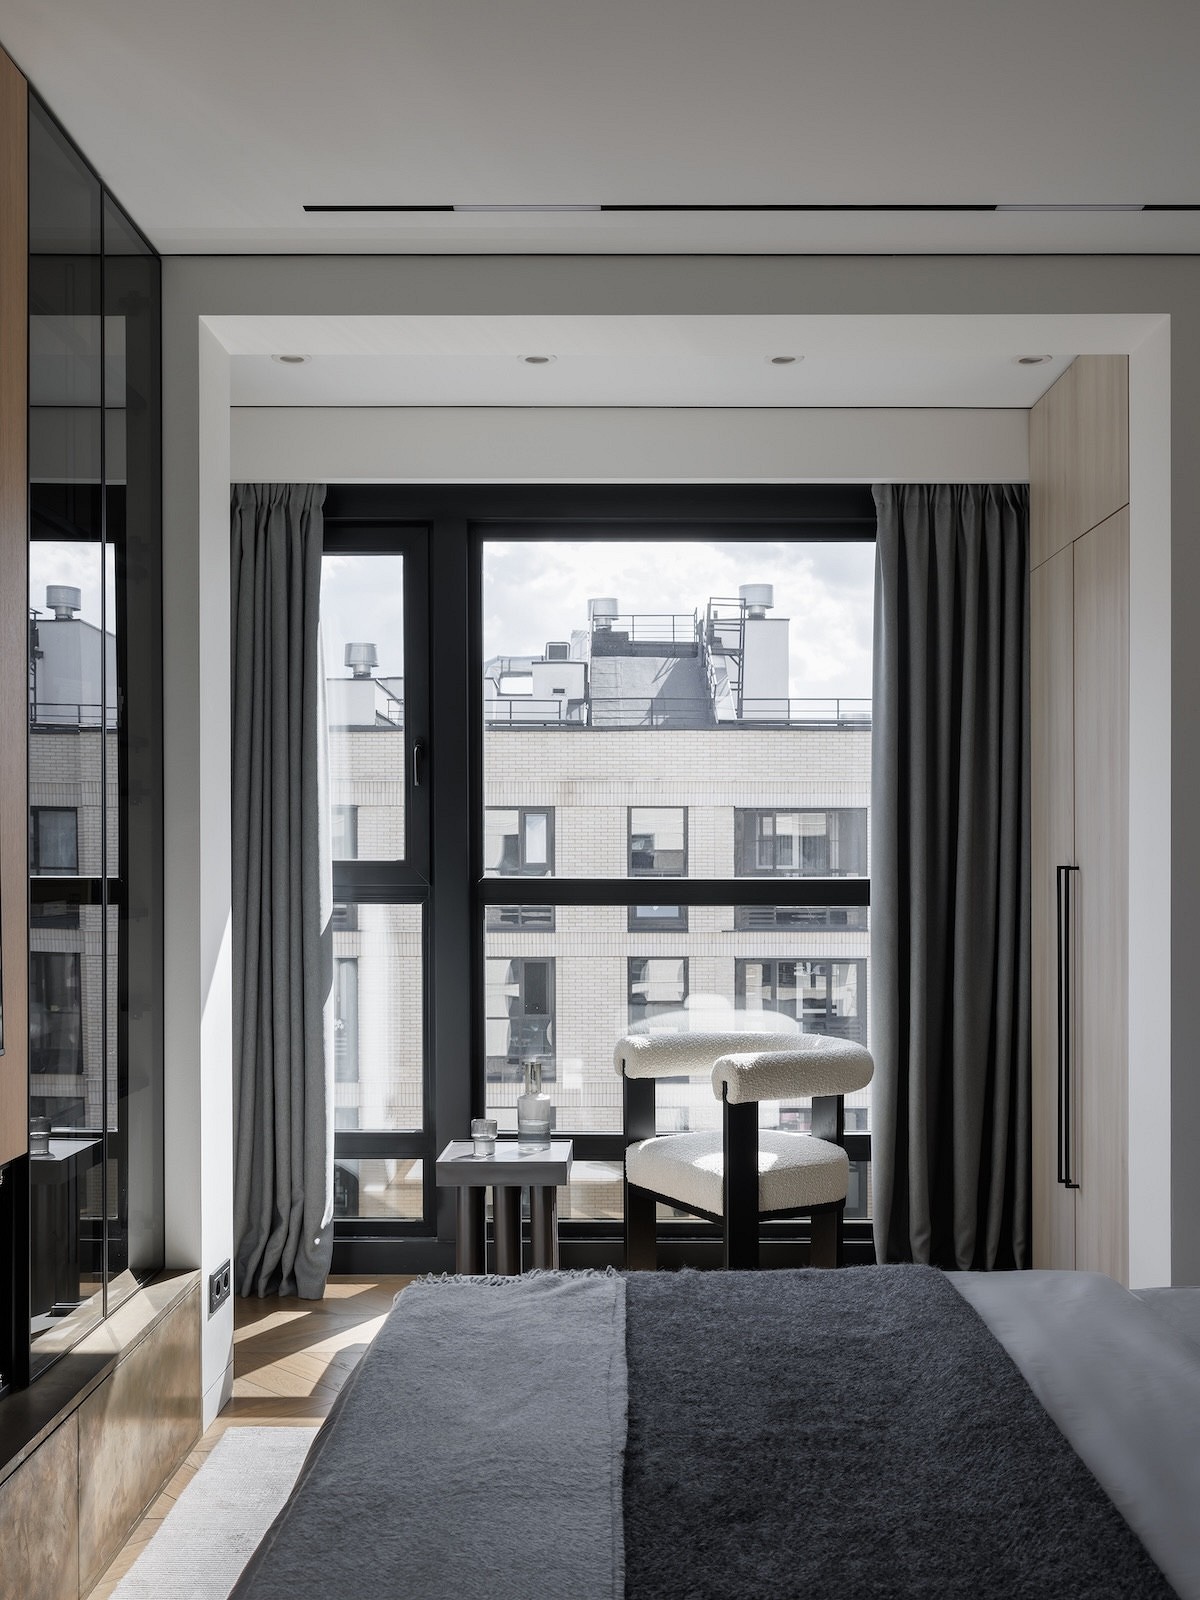 Как дизайнер оформила интерьер для себя? Маленькая и роскошная квартира 39 кв. м12